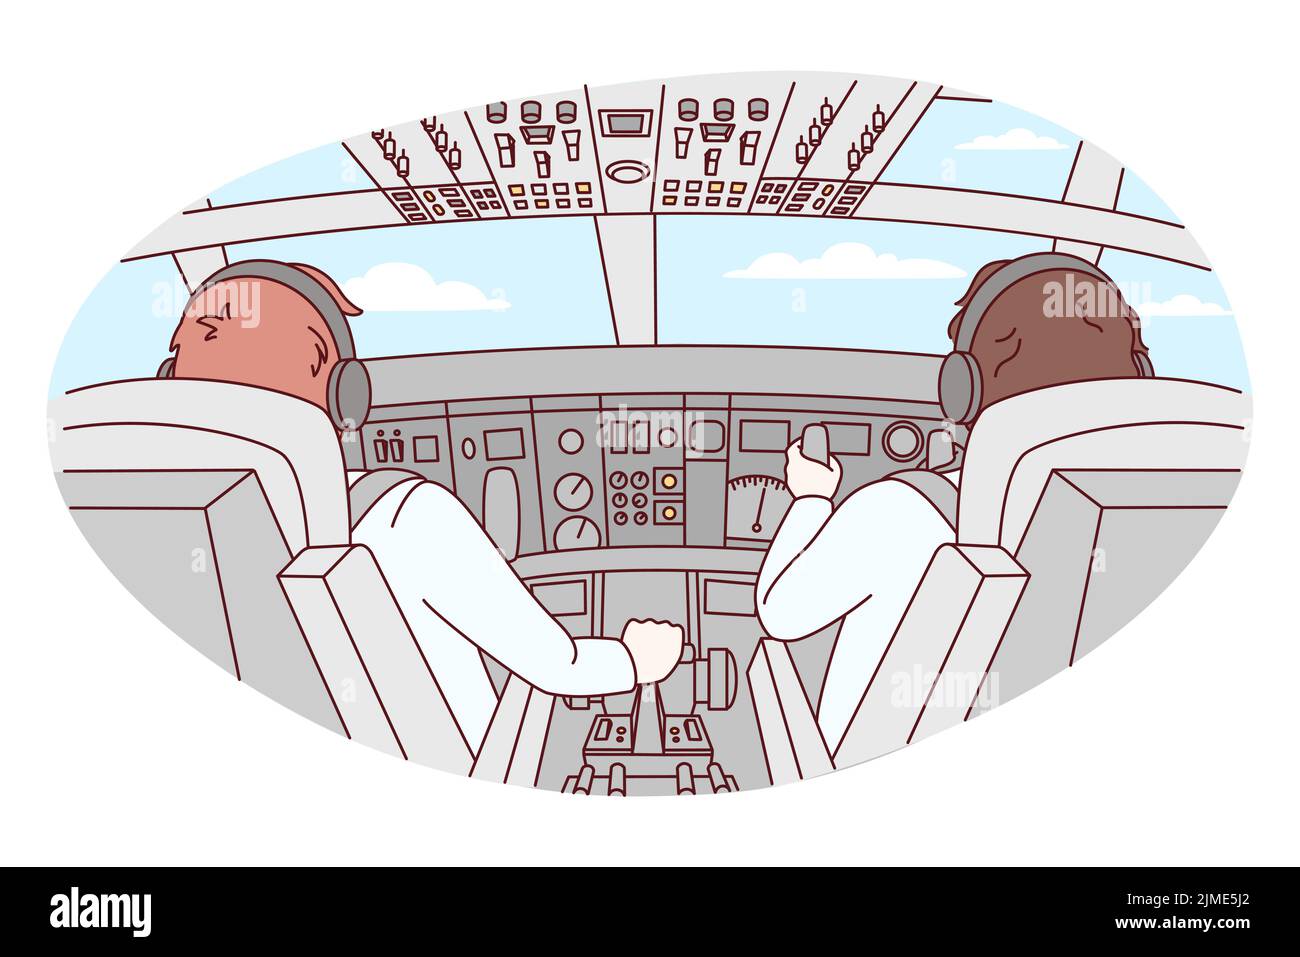 Piloten in der Kabine des Flugzeugs während des Fluges. Flugzeugbesatzung vor dem Werk. Luftfahrt und Fliegen. Vektorgrafik. Stock Vektor